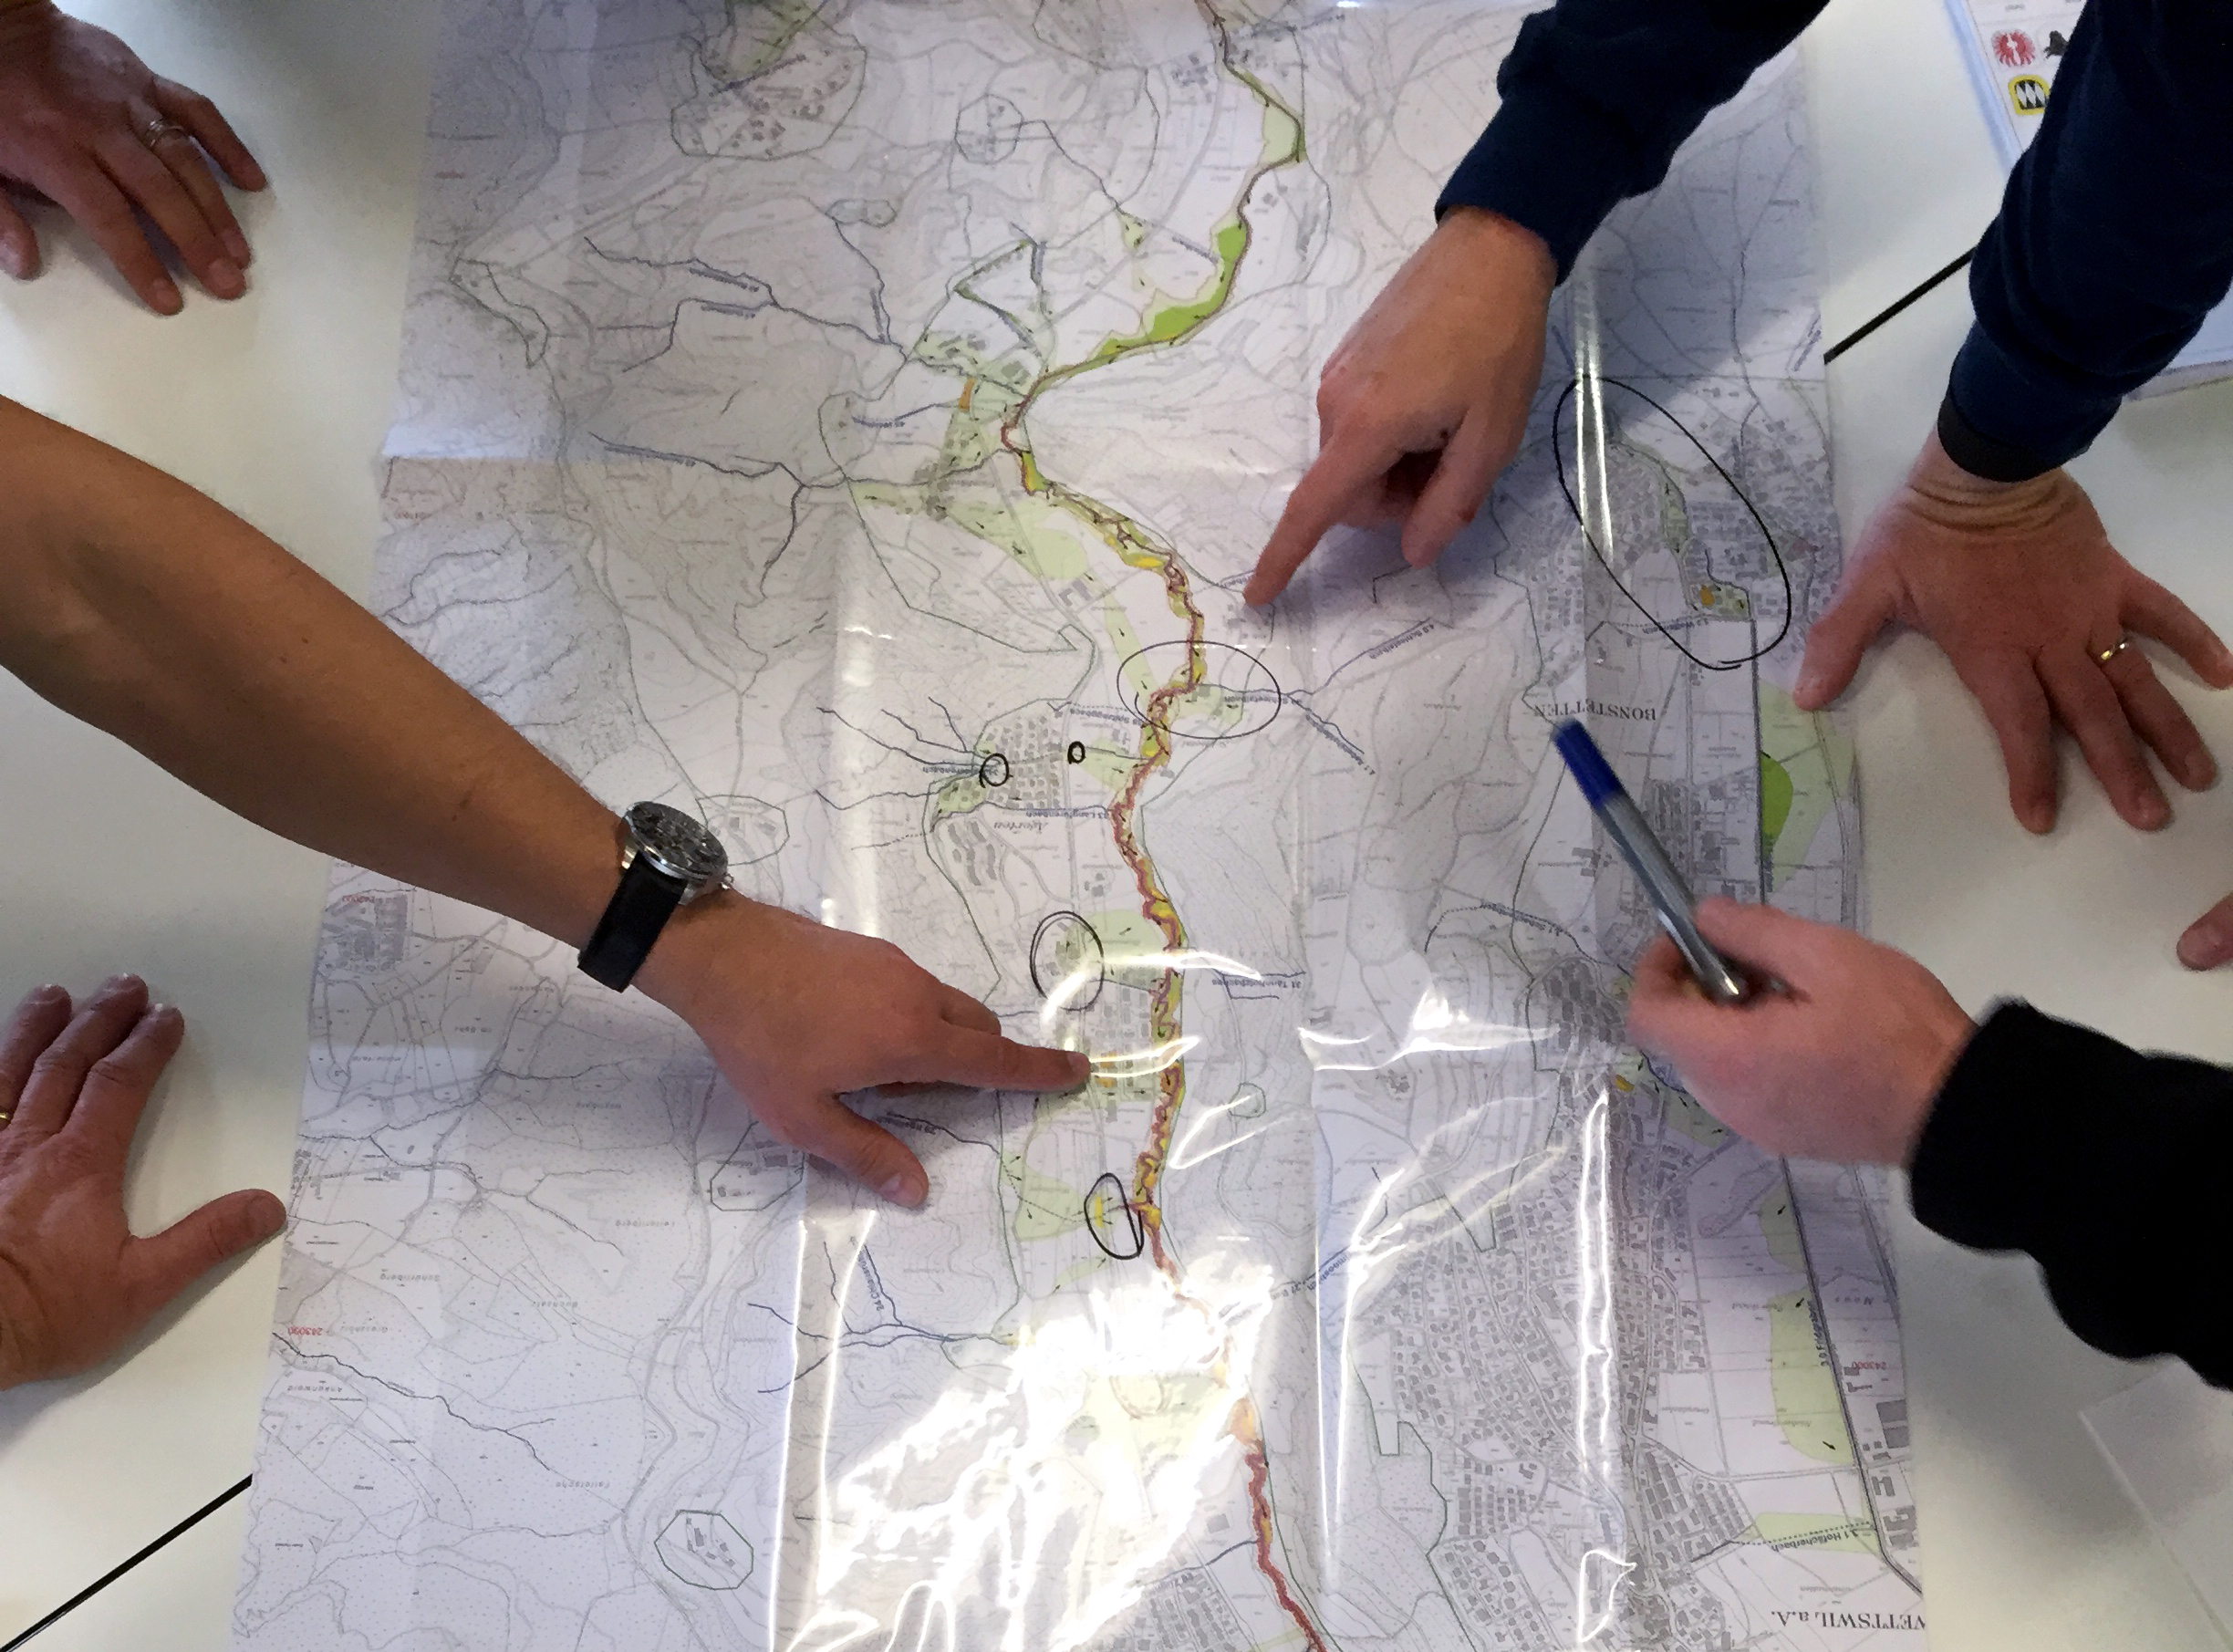  I partecipanti al corso indicano una mappa.